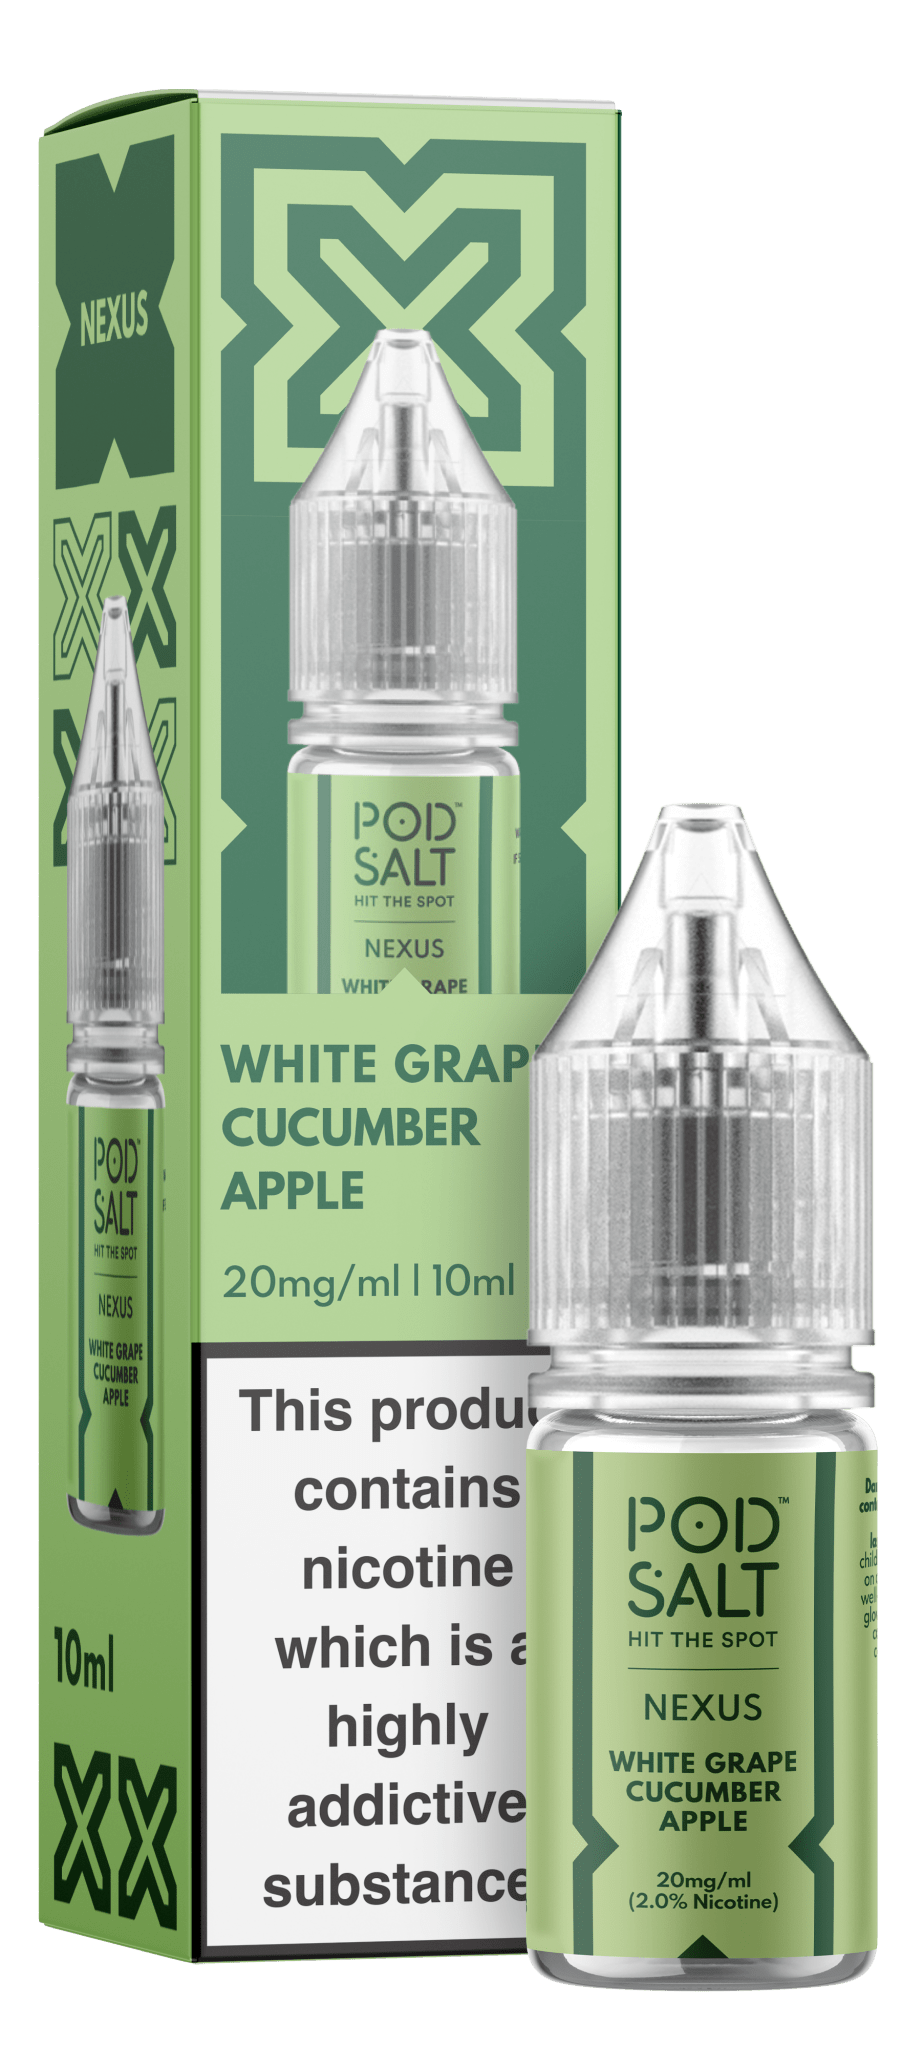 POD SALT - 10ML NEXUS WHITE GRAPE CUCUMBER APPLE NIC SALT E LIQUID - Super E-cig